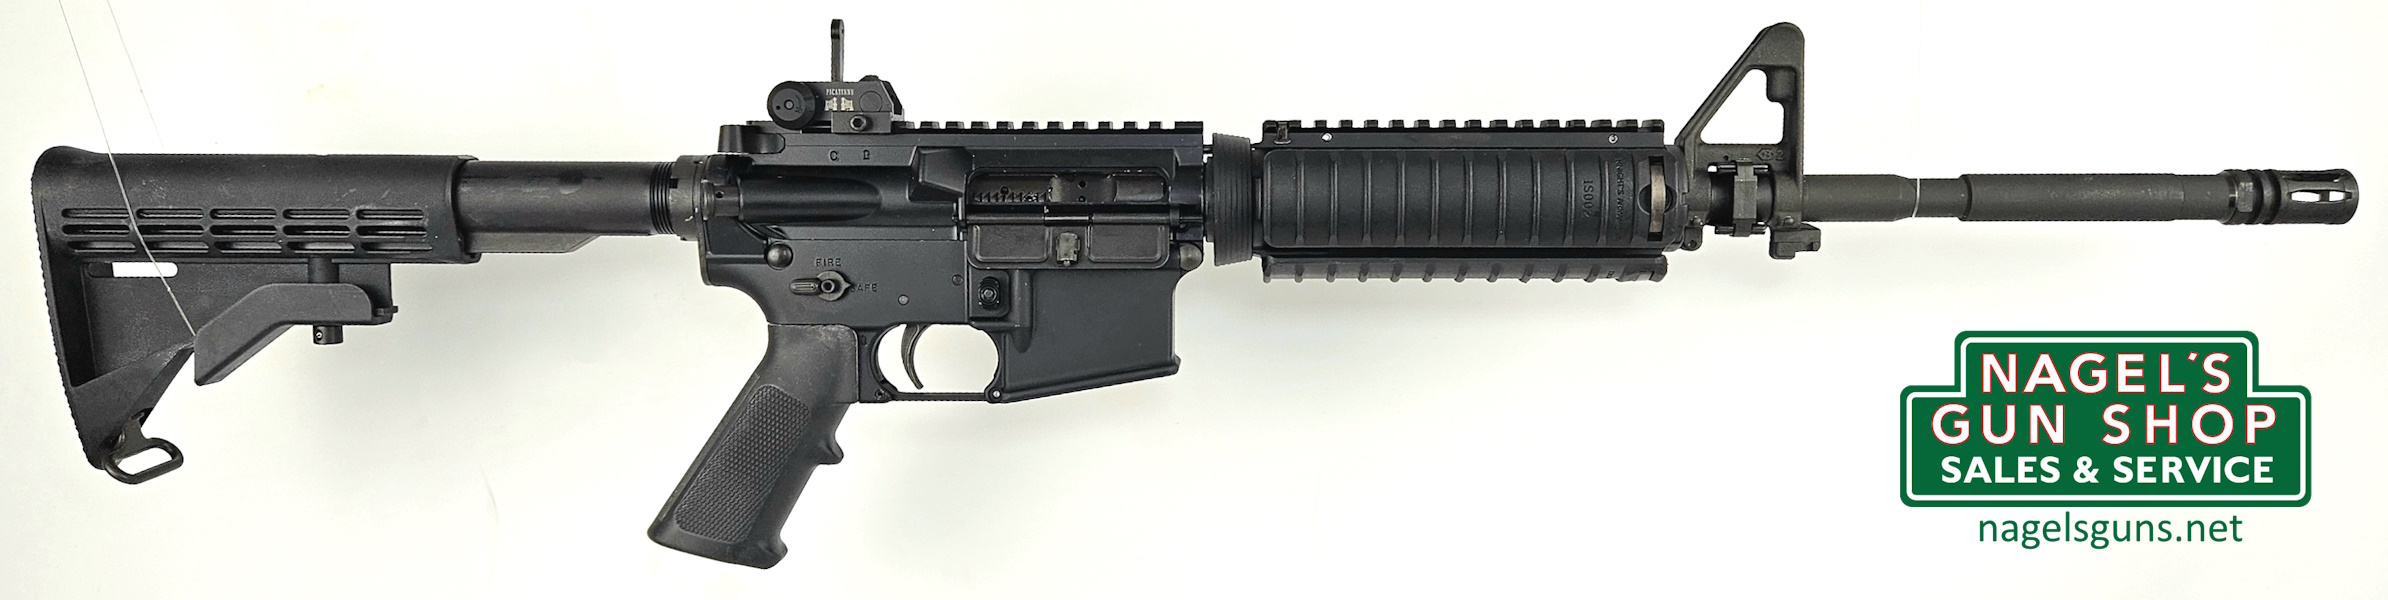 Colt M4A1 Carbine 5.56mm Rifle